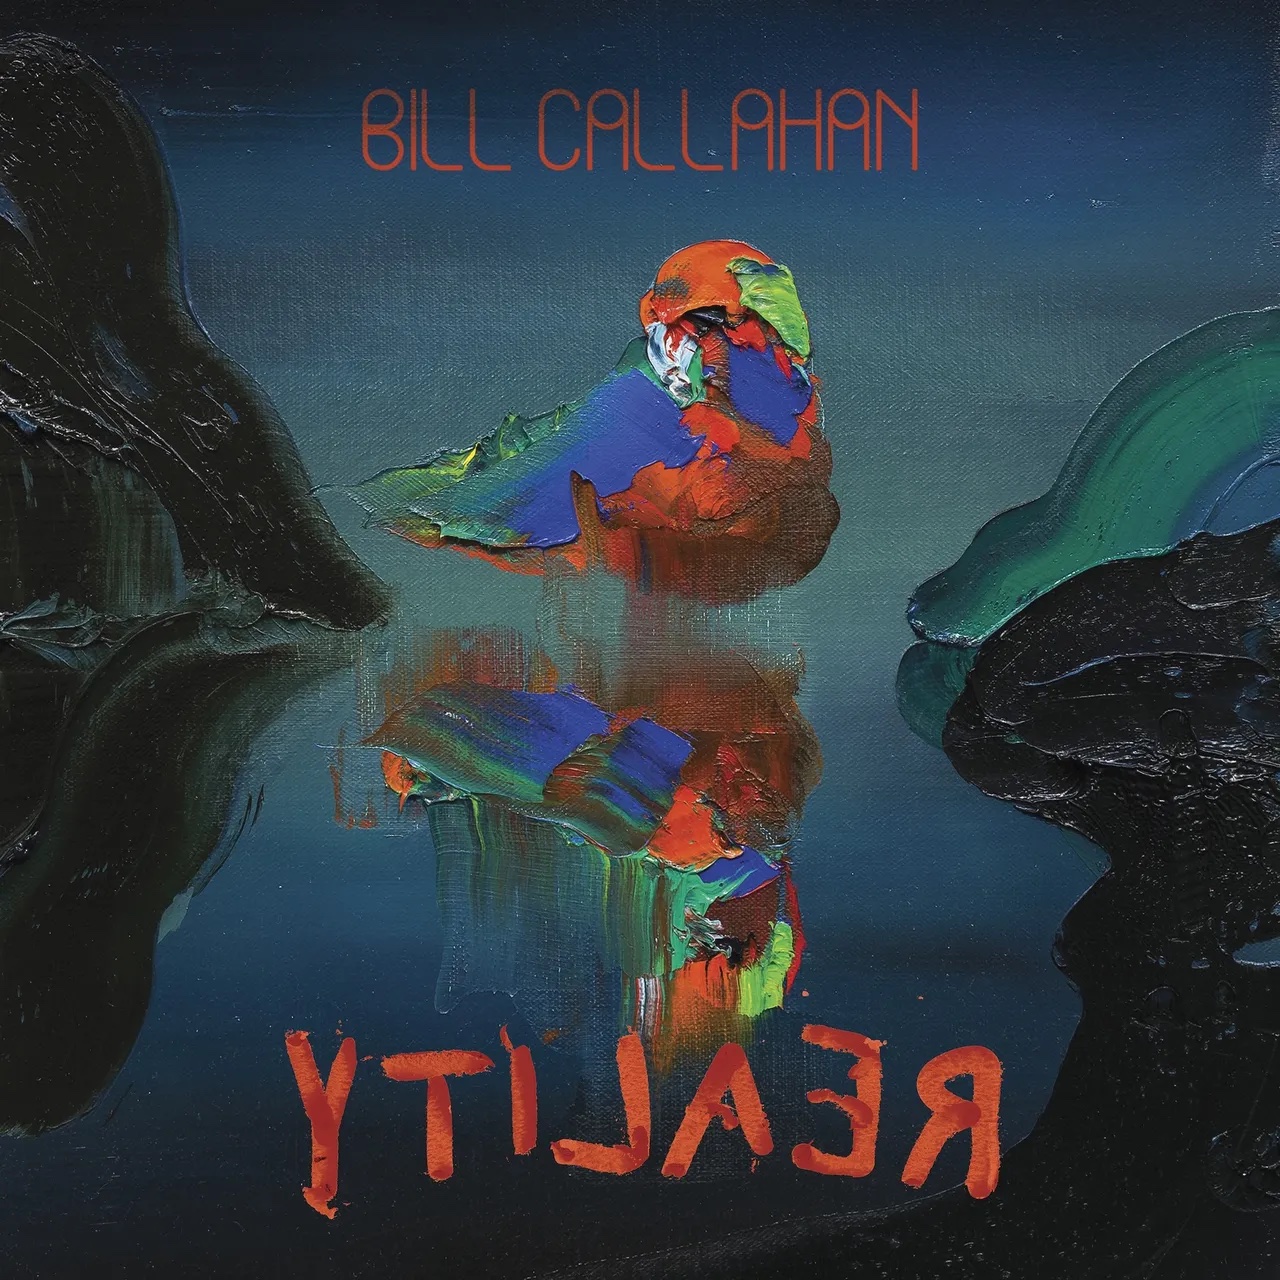 Bill Callahan – YTILAER